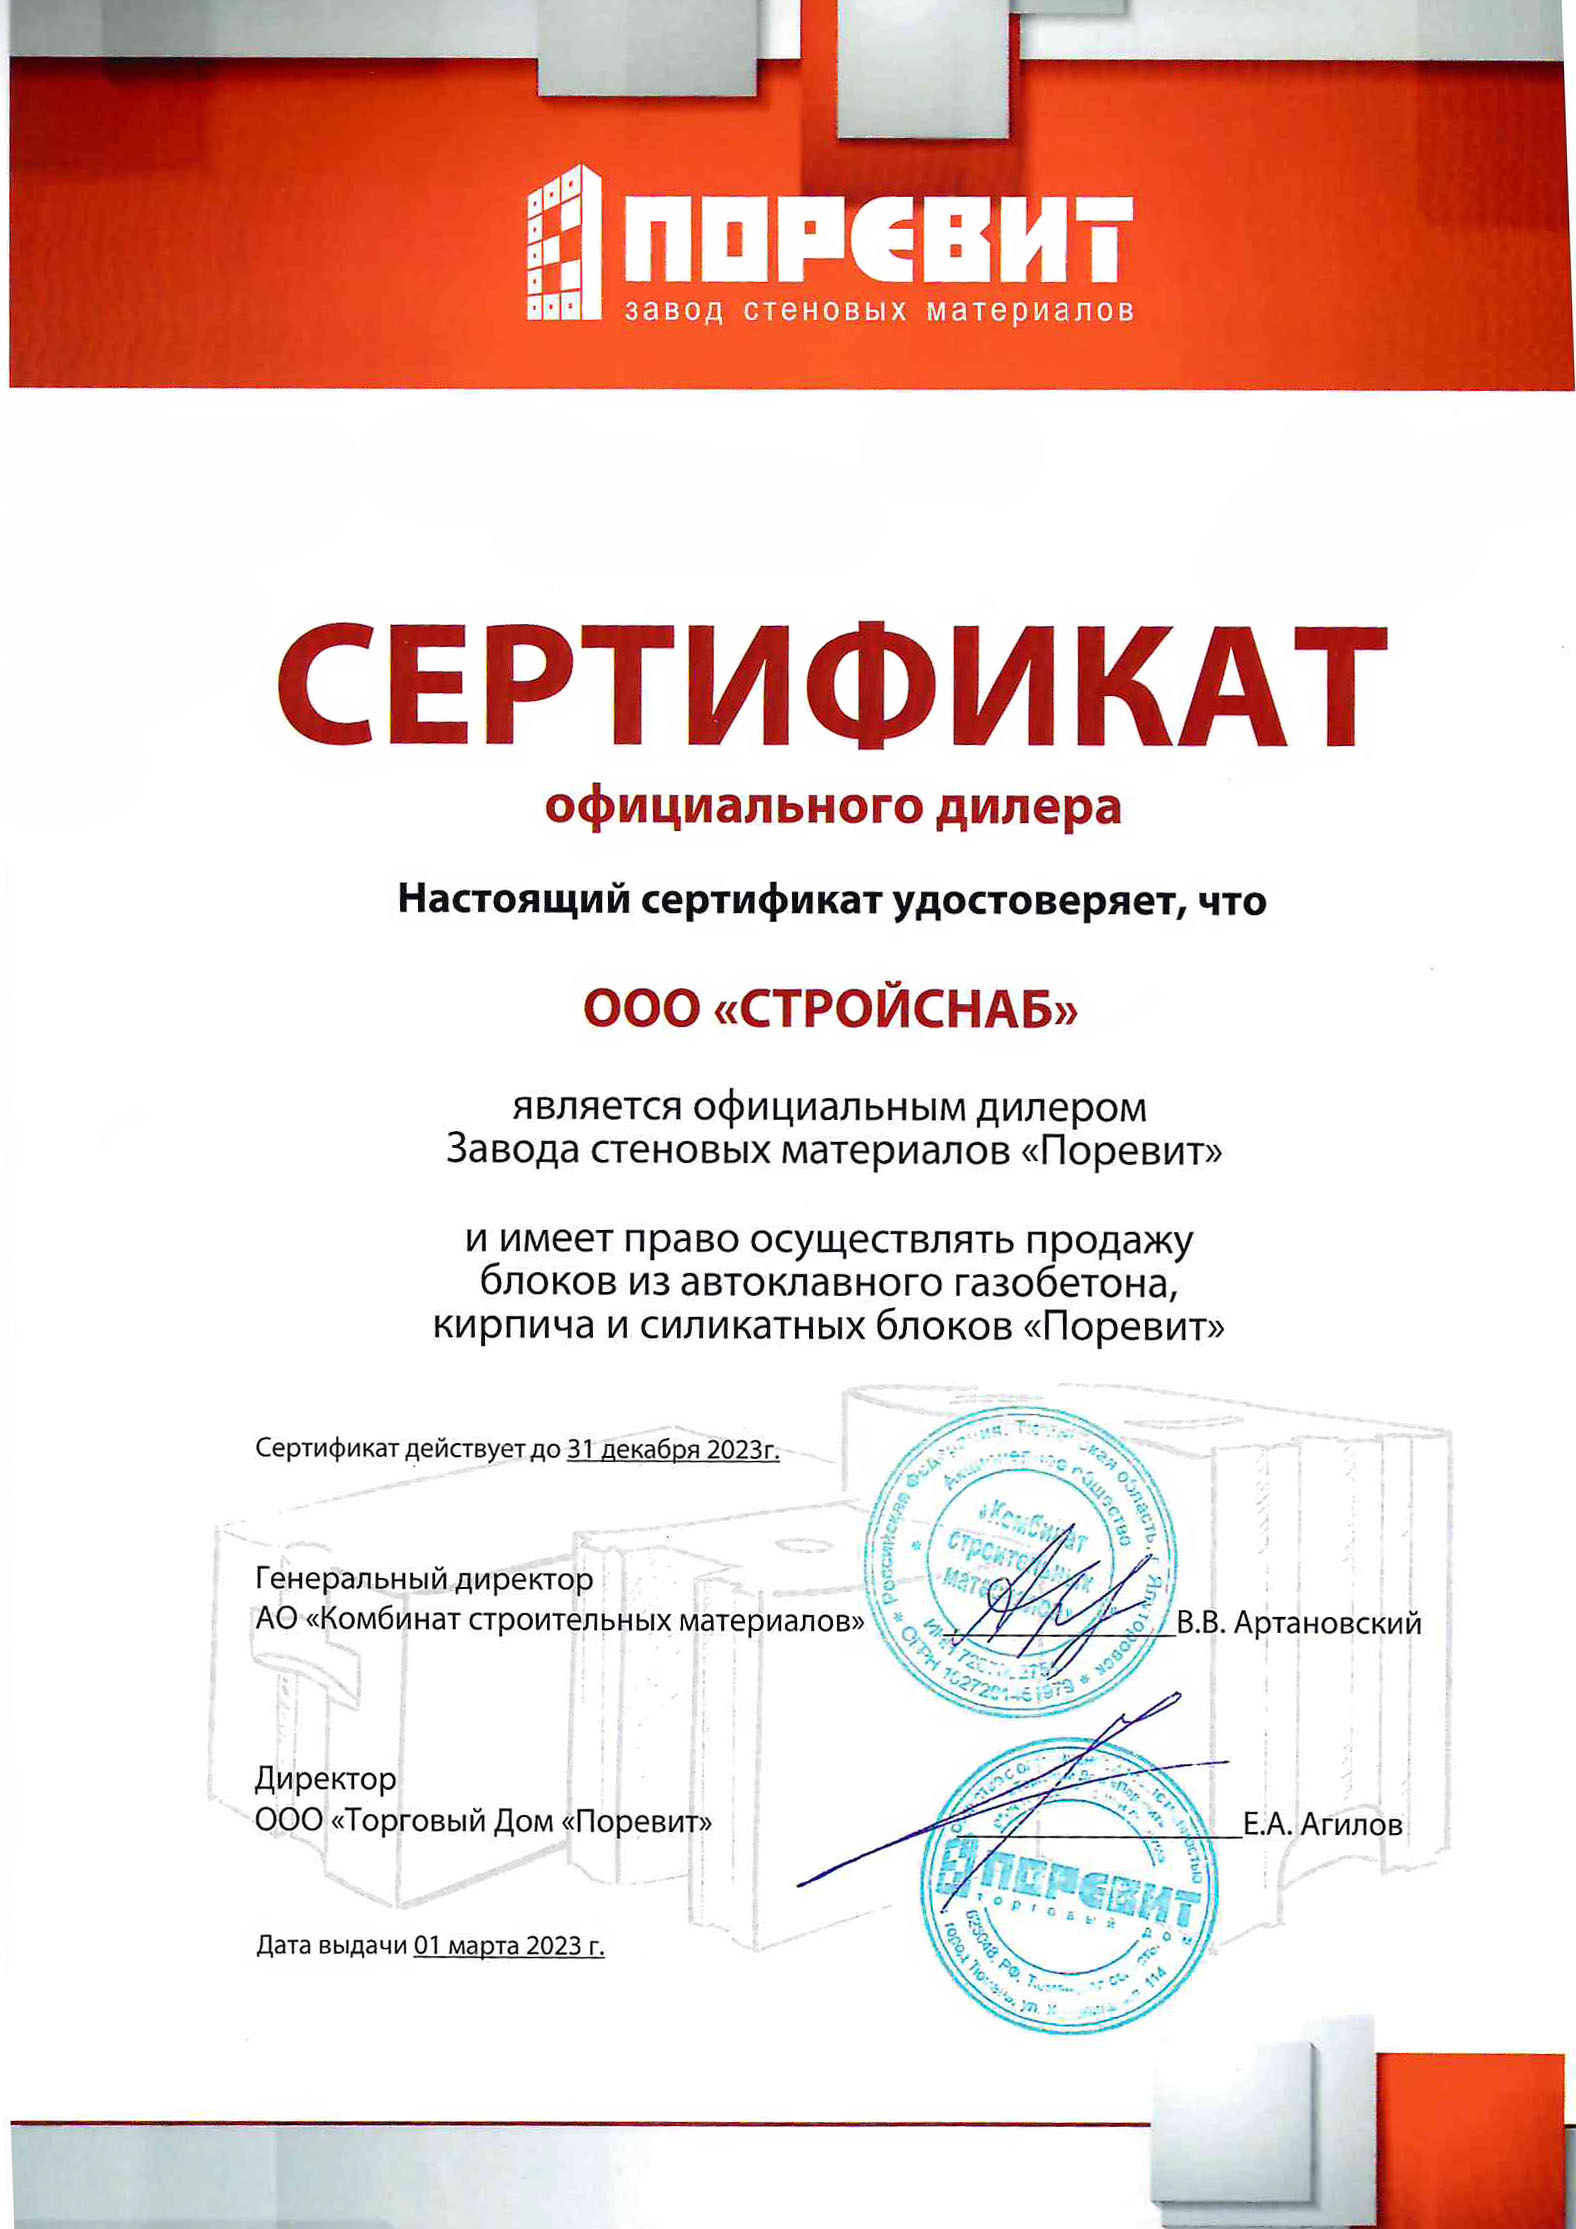 Сертификат официального дилера "Поревит" 2023г.